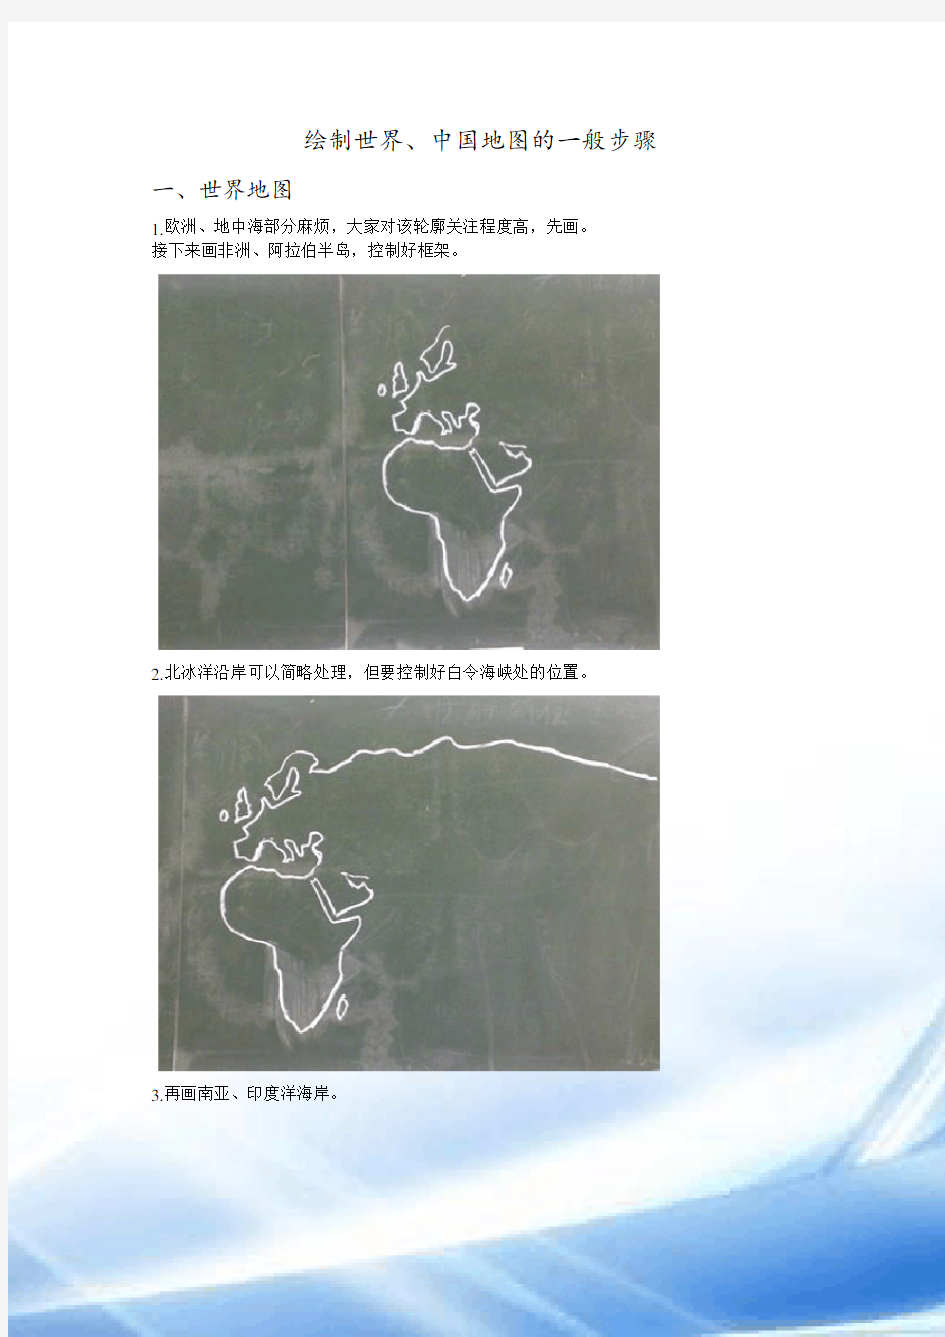 绘制世界、中国地图的一般步骤